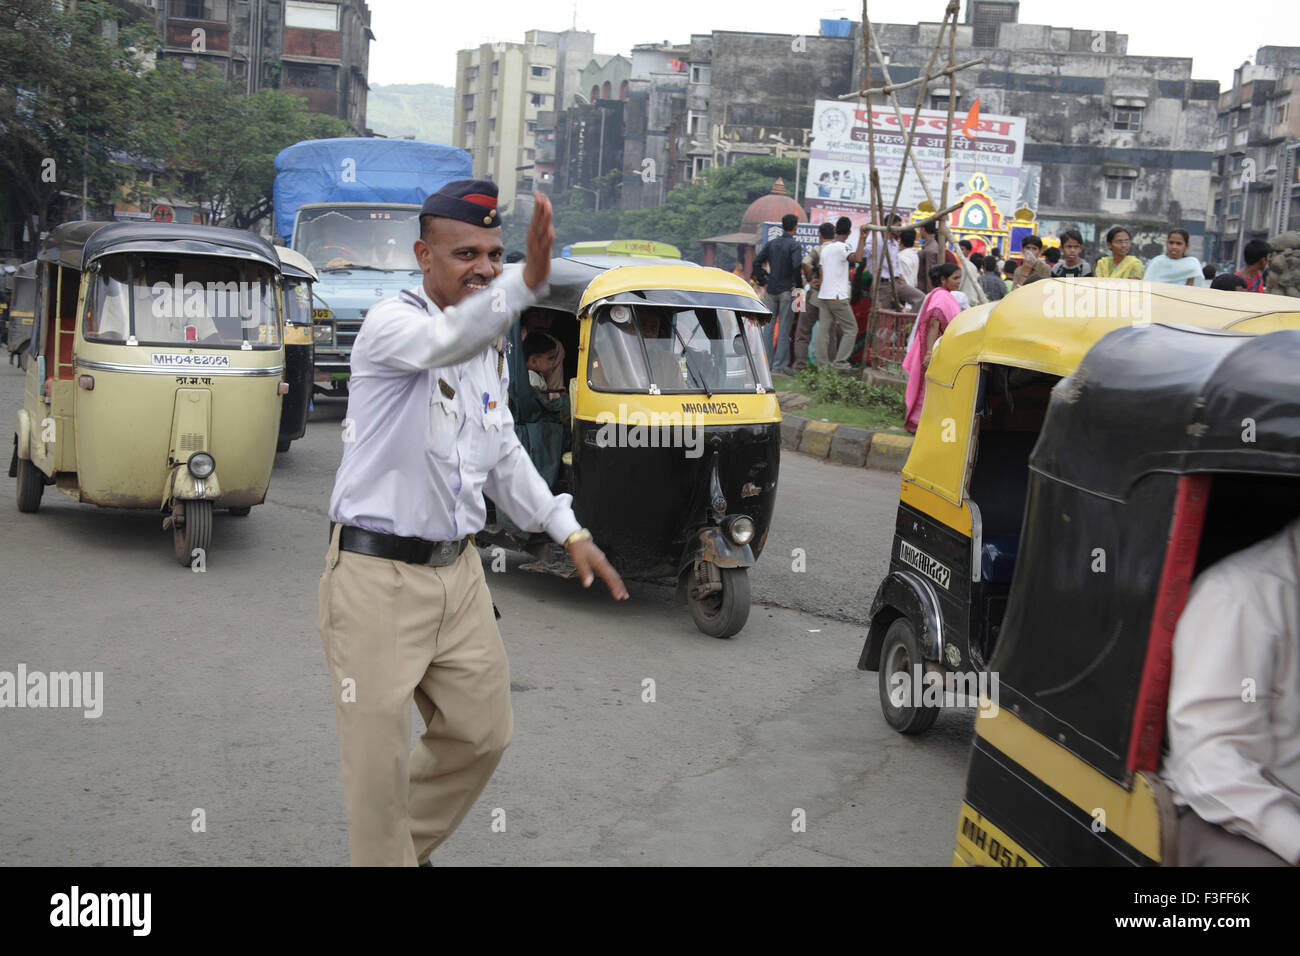 Trafic Trafic de contrôle de police pendant la procession religieuse à Kalwa jonction ; Thane Maharashtra Inde ; ;;PAS DE MR Banque D'Images